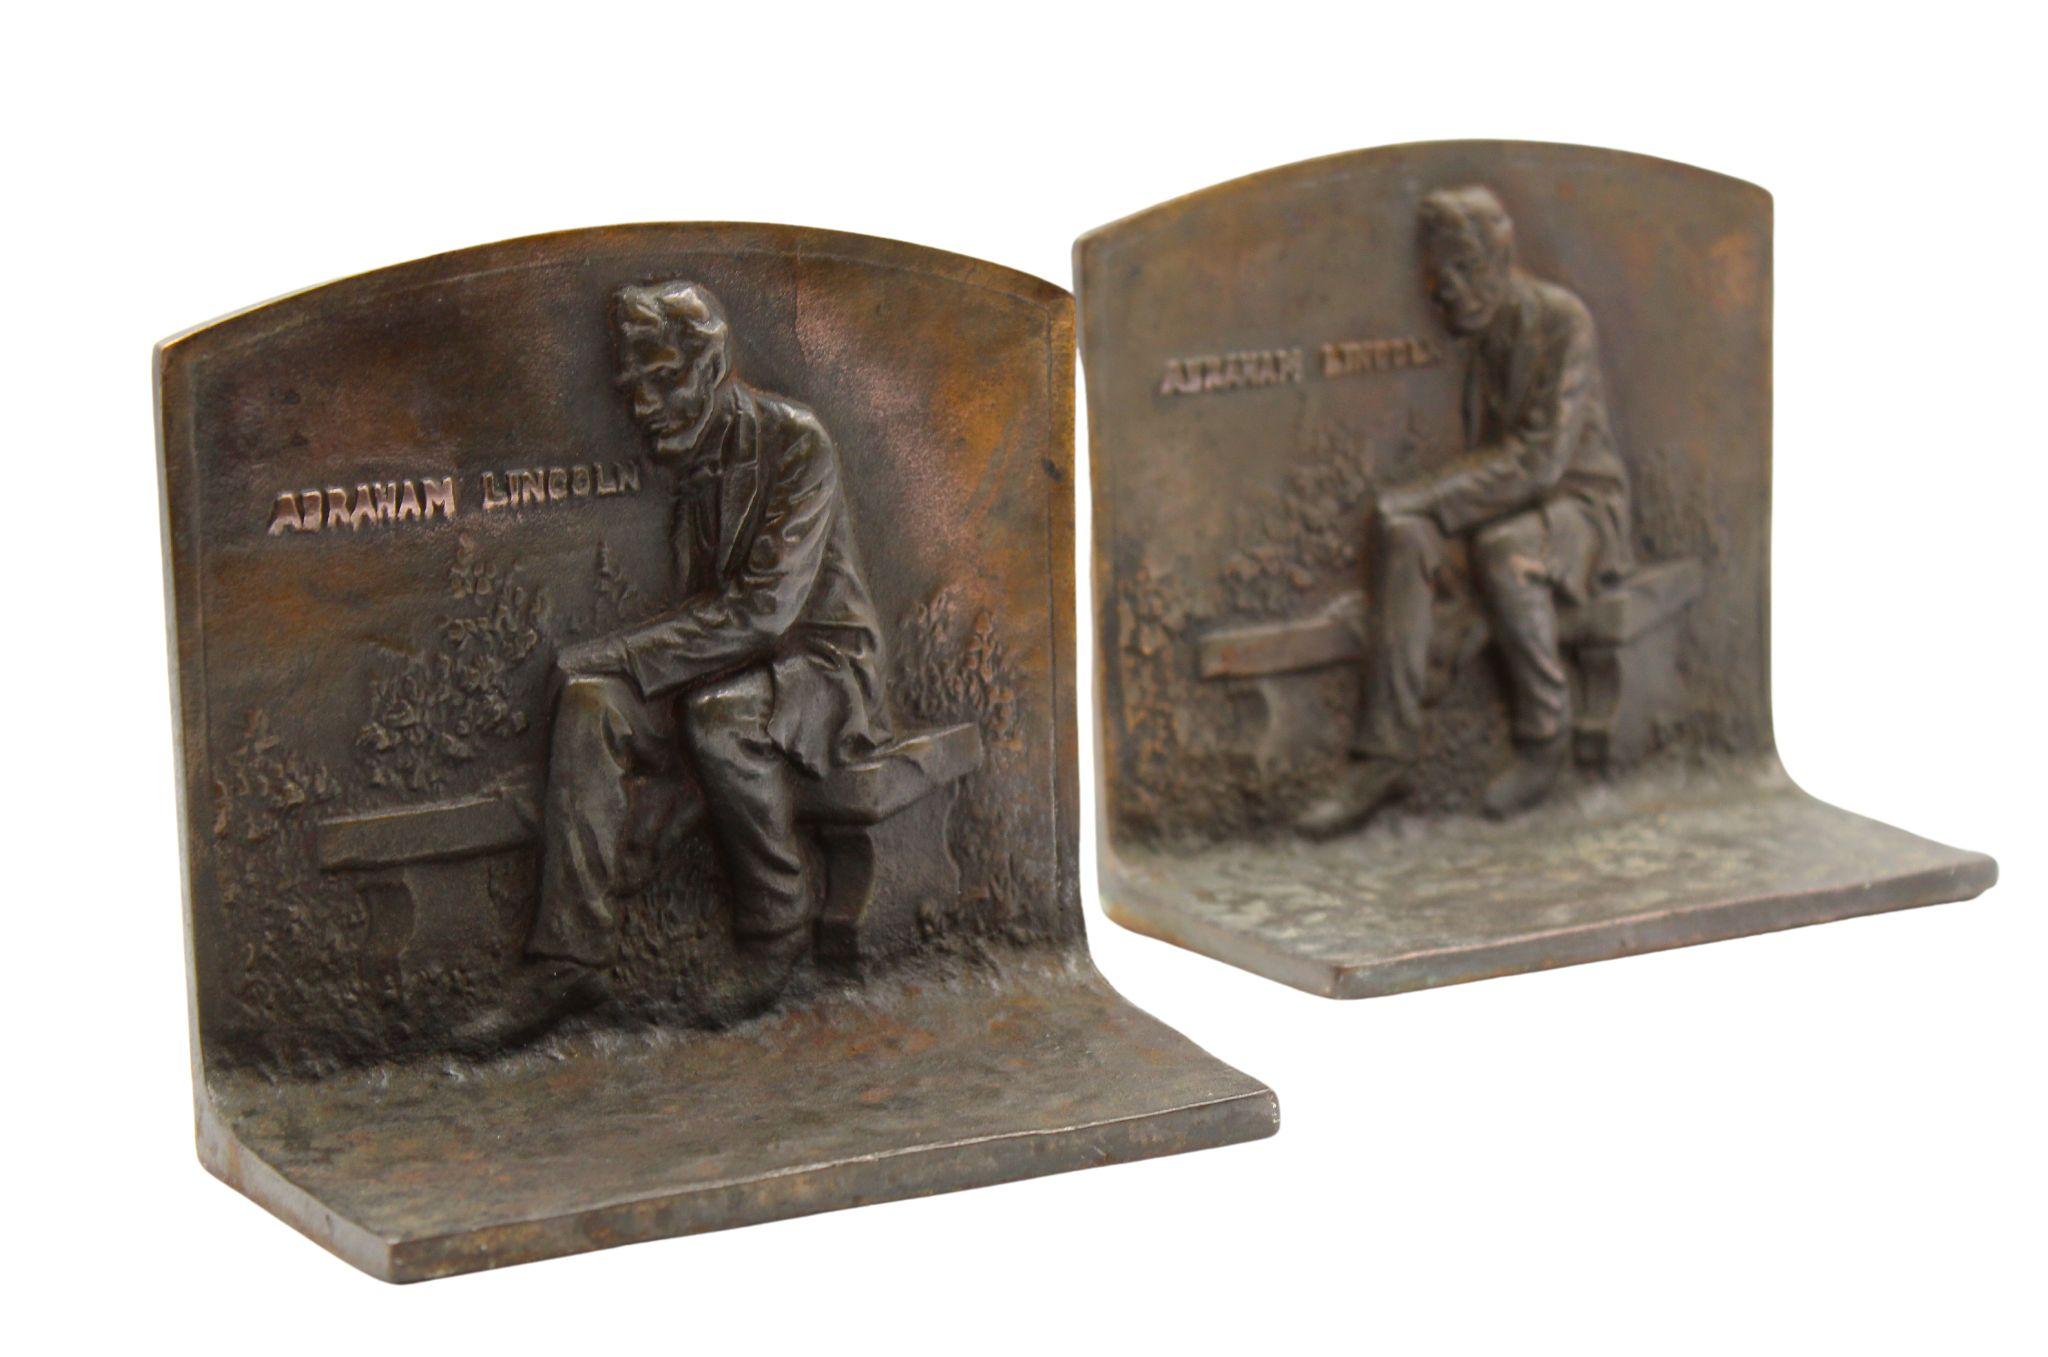 Voici une paire de serre-livres vintage, représentant Abraham Lincoln assis sur un banc. La scène est représentée en relief sur le devant du serre-livres, avec le texte 